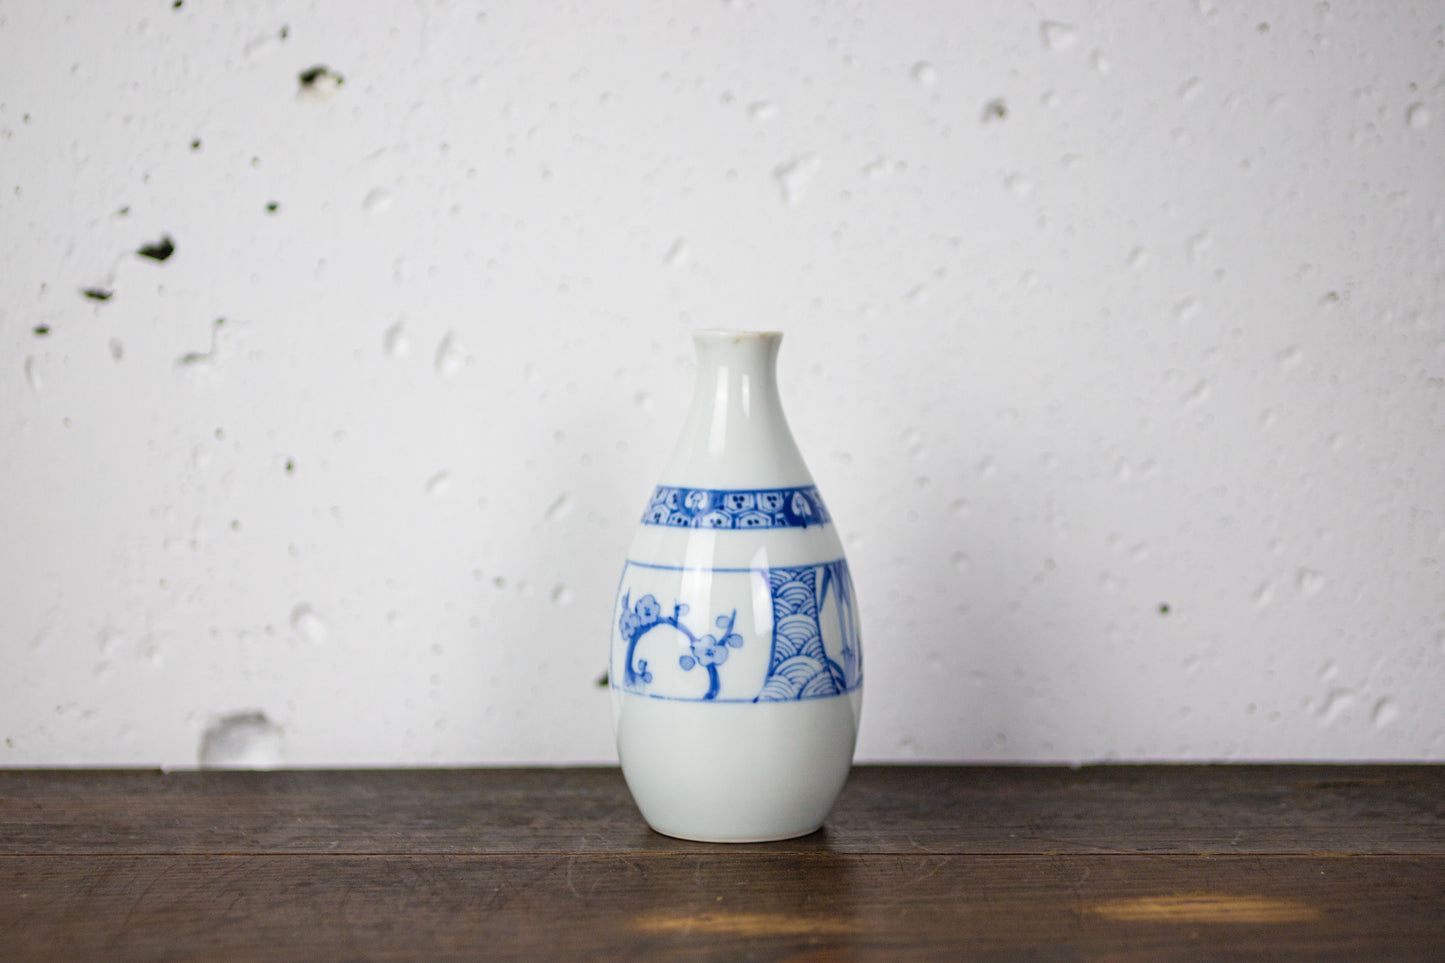 Plum-patterned small sake bottle